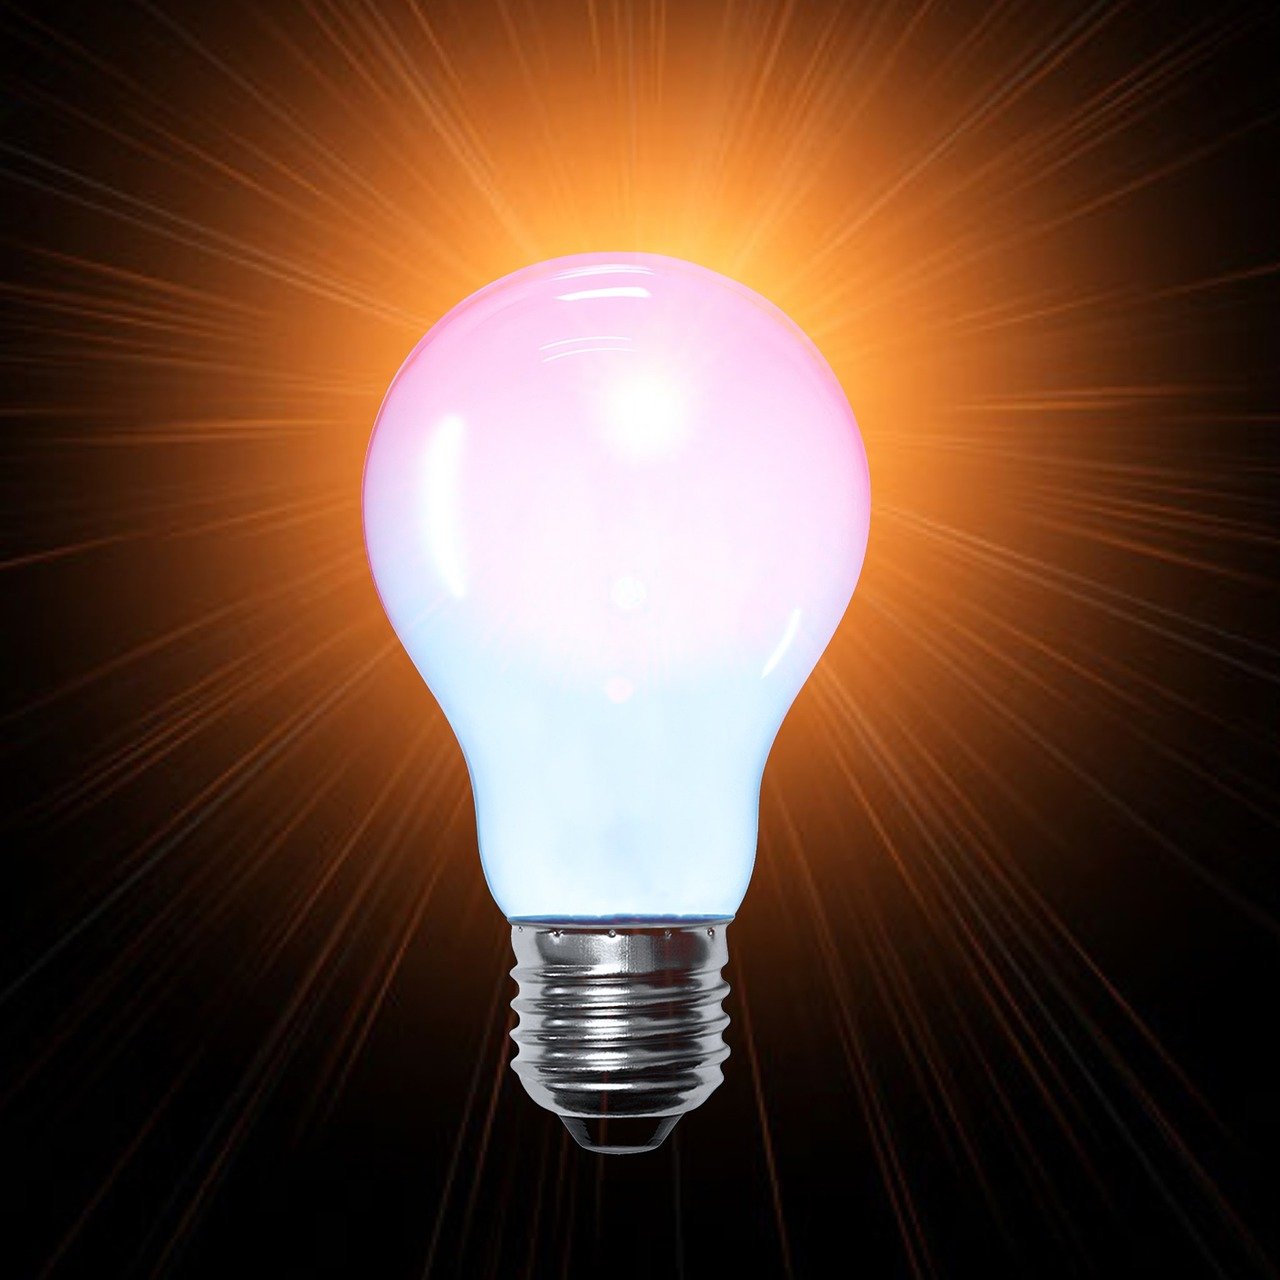 Lampe Lumière Orange Ampoule - Image gratuite sur Pixabay